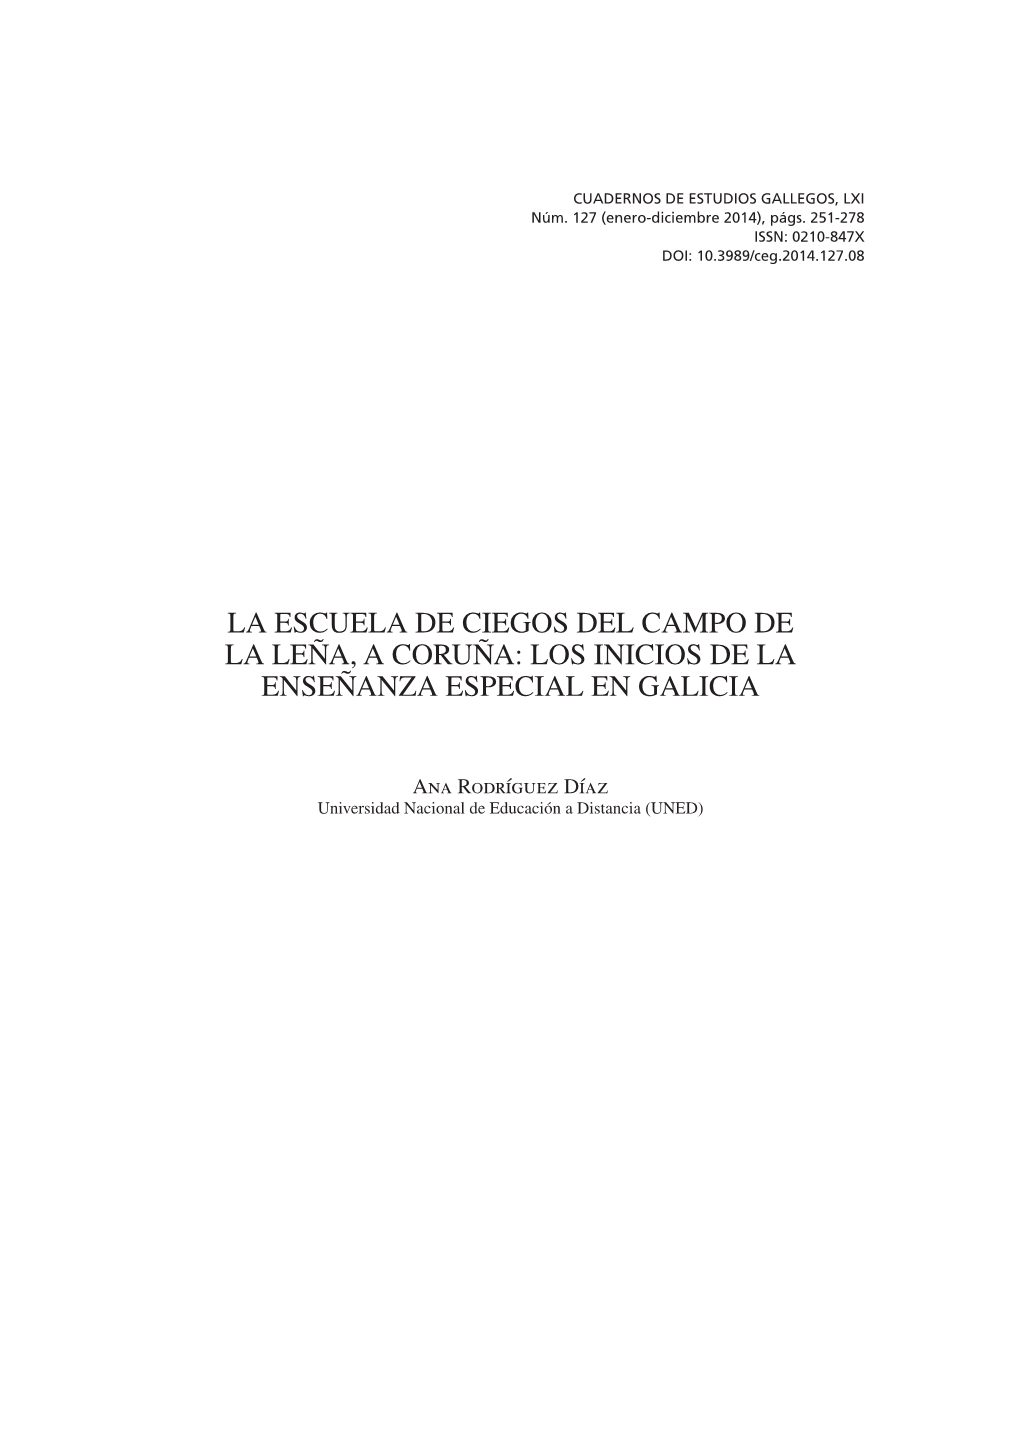 La Escuela De Ciegos Del Campo De La Leña, a Coruña: Los Inicios De La Enseñanza Especial En Galicia; School for the Blind, C